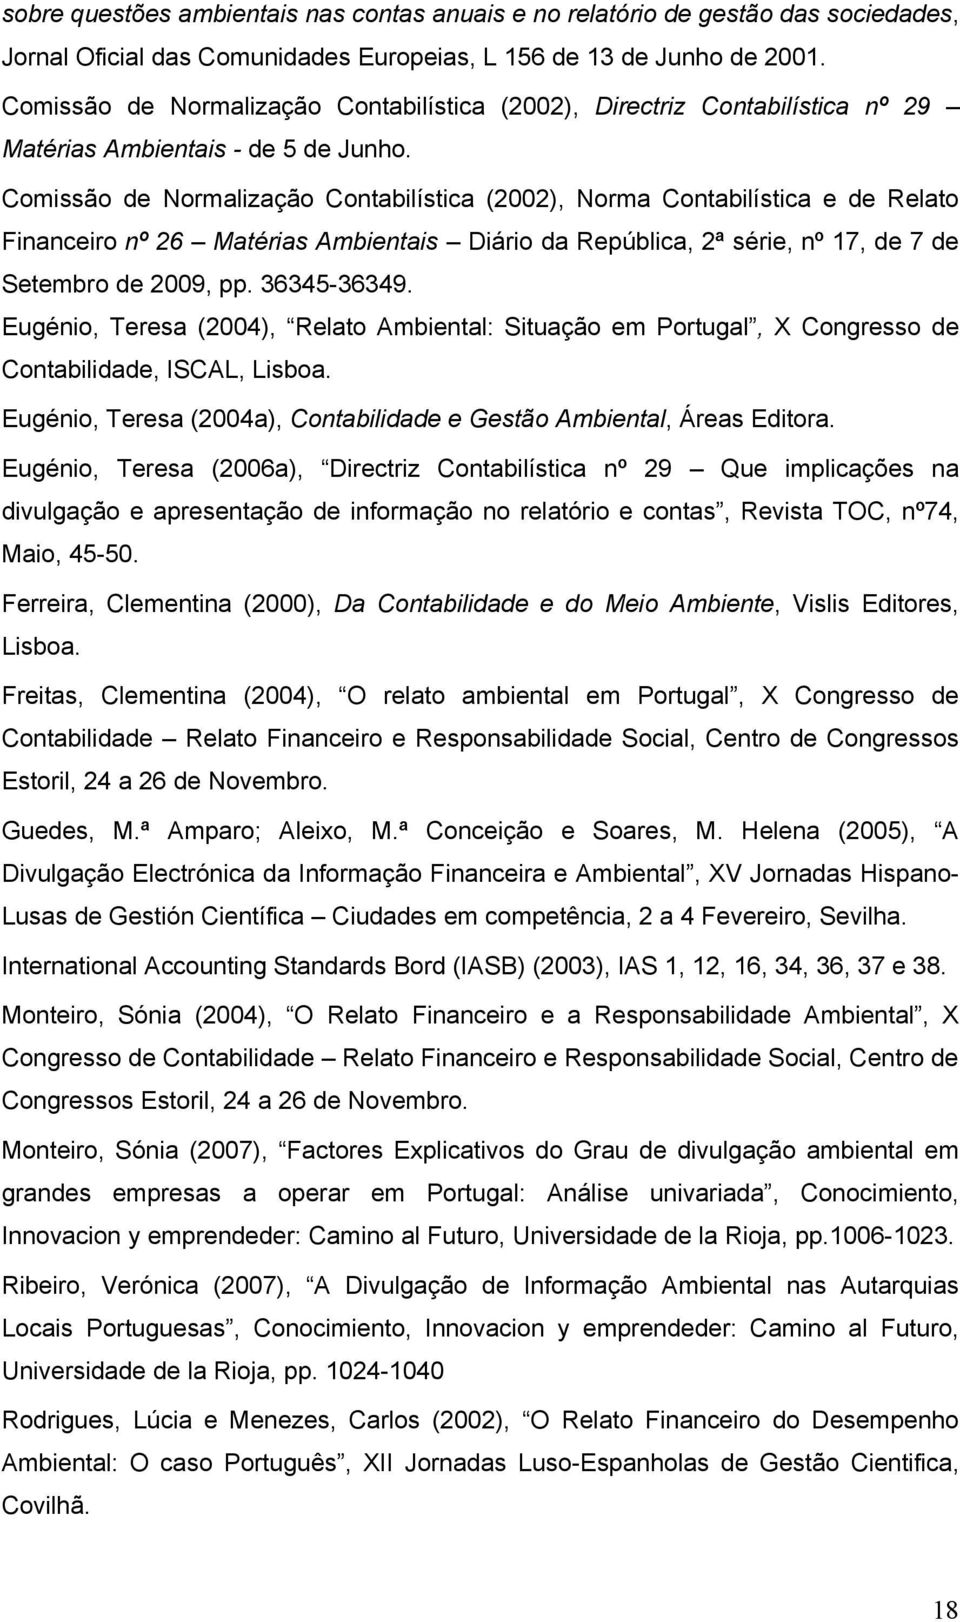 Comissão de Normalização Contabilística (2002), Norma Contabilística e de Relato Financeiro nº 26 Matérias Ambientais Diário da República, 2ª série, nº 17, de 7 de Setembro de 2009, pp. 36345-36349.